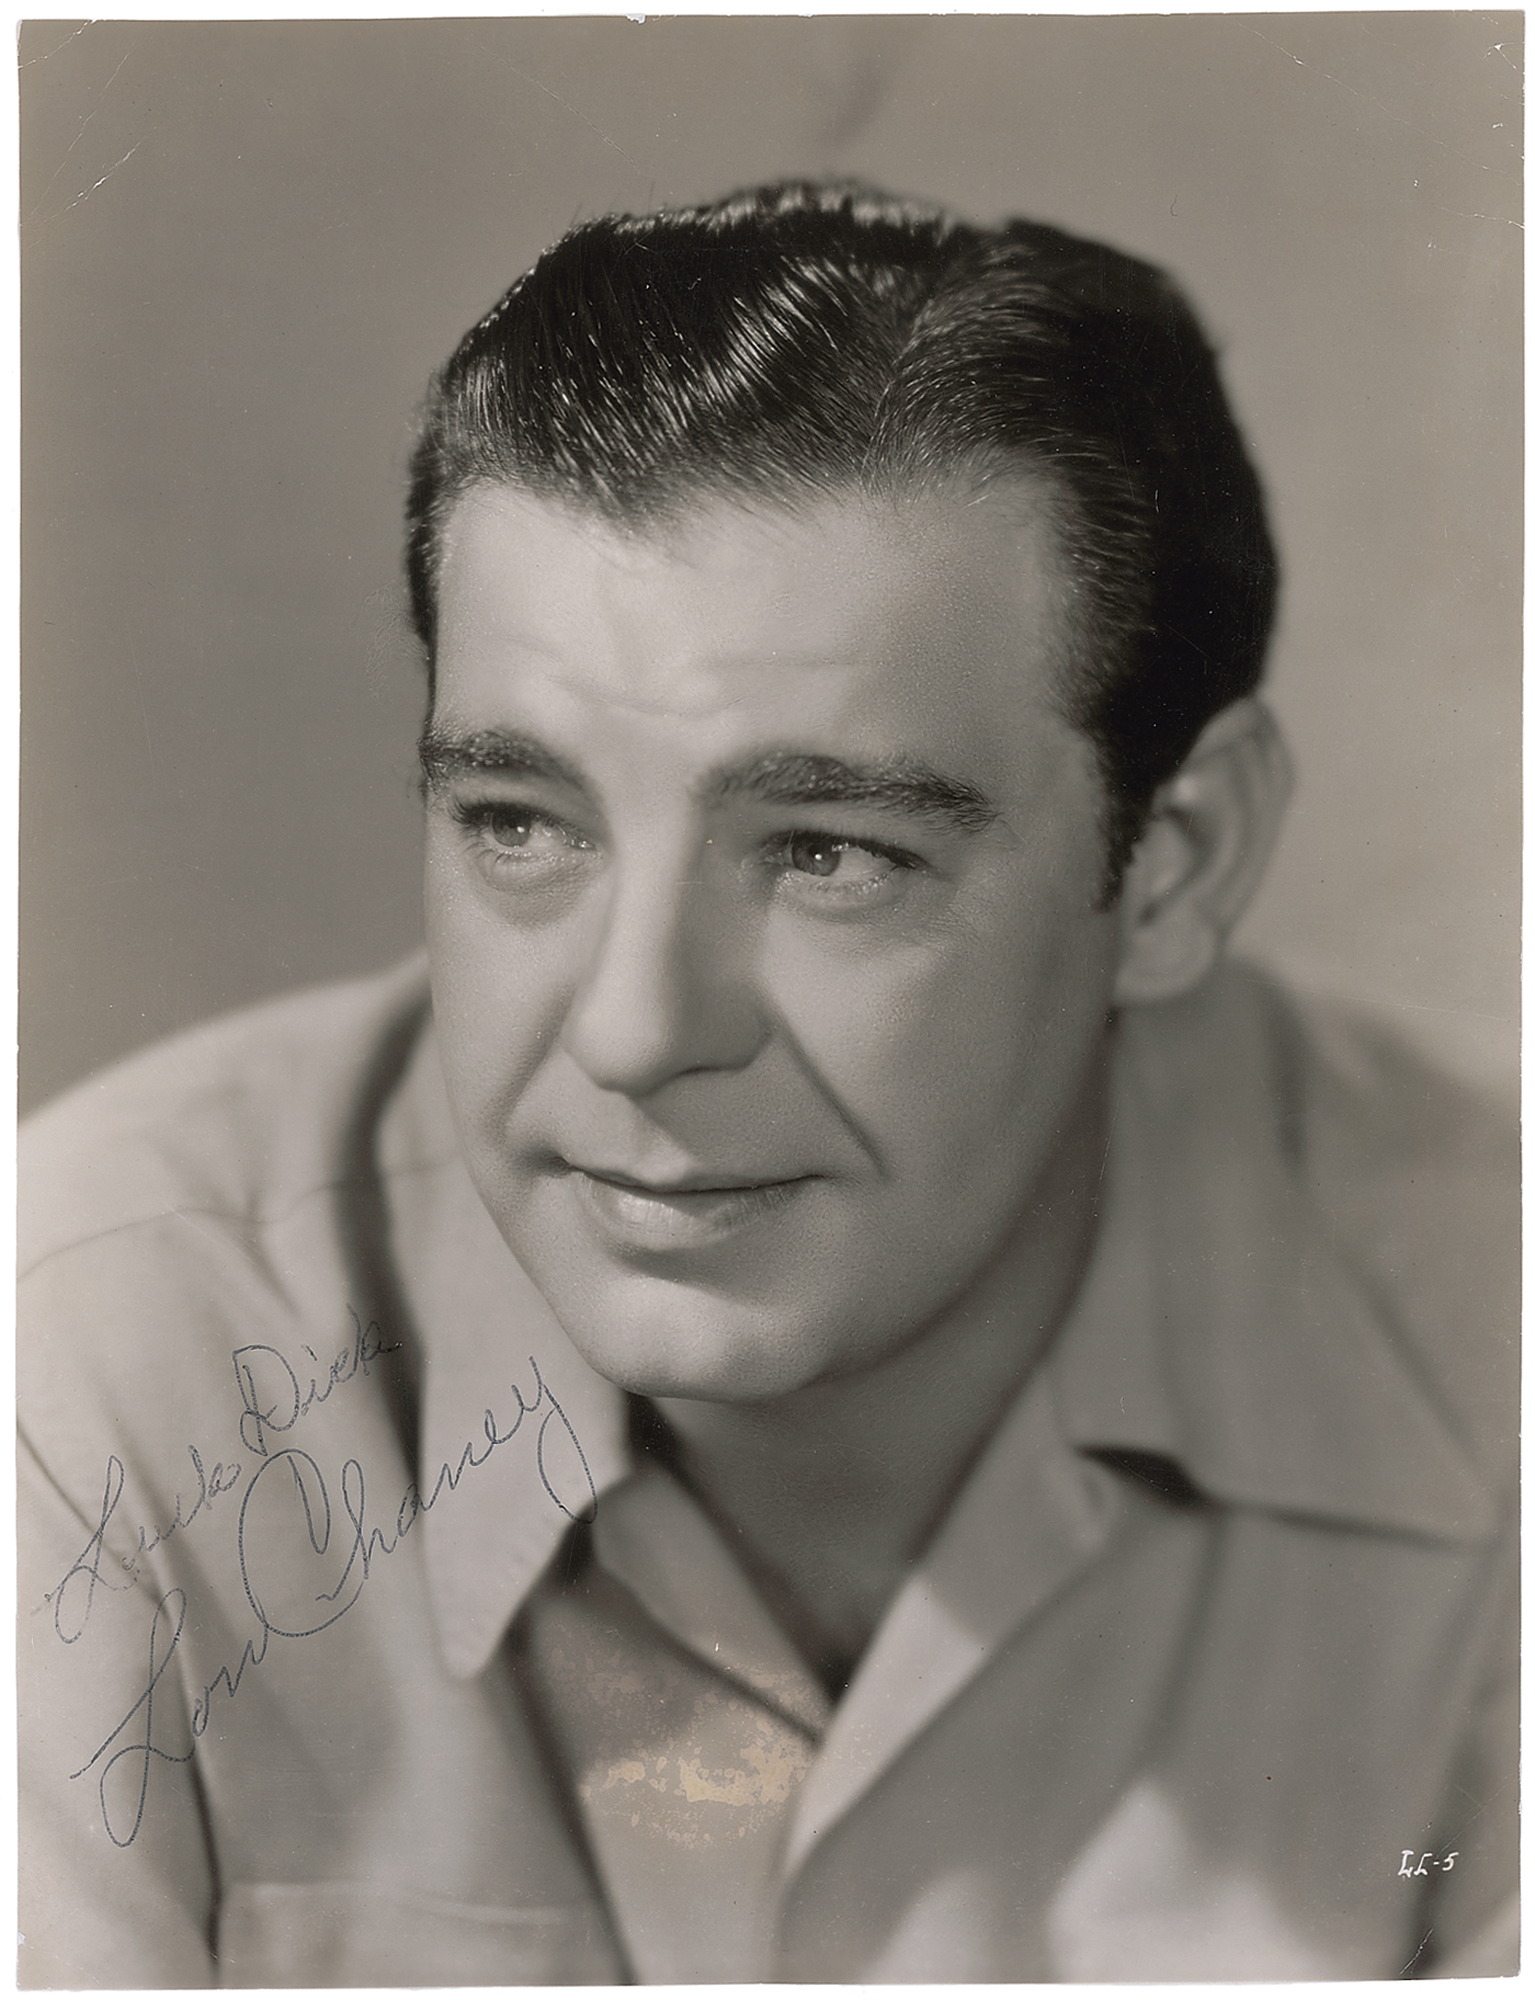 Lon Chaney, Jr. Signed Photograph | RR Auction